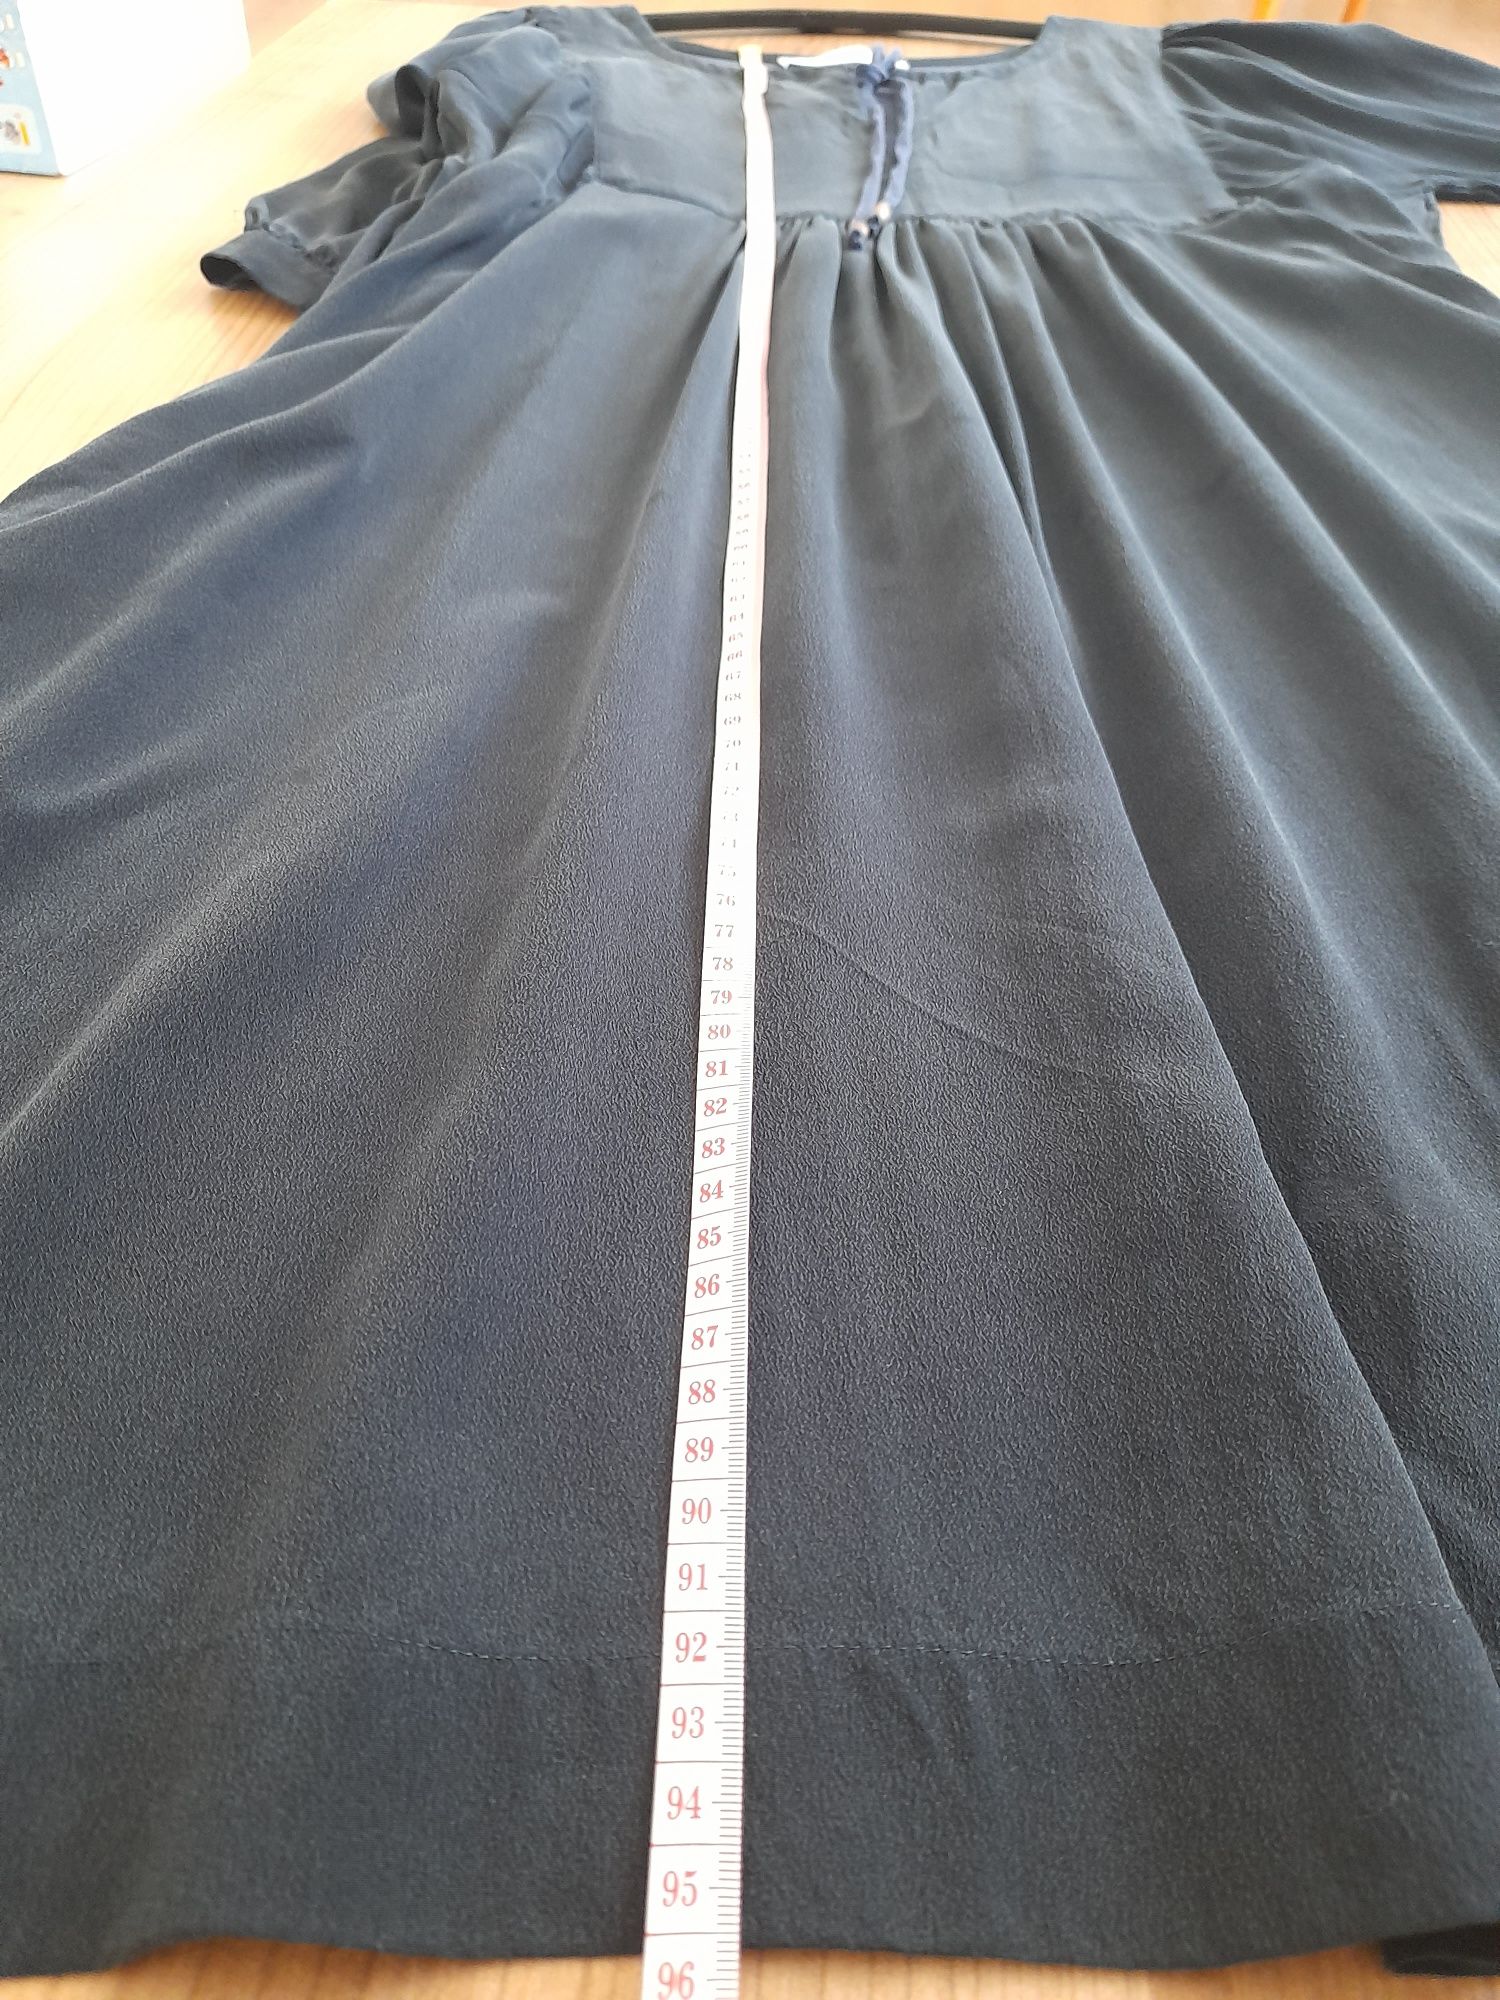 Рокля Massimo dutti, размер L, копринена  рокля